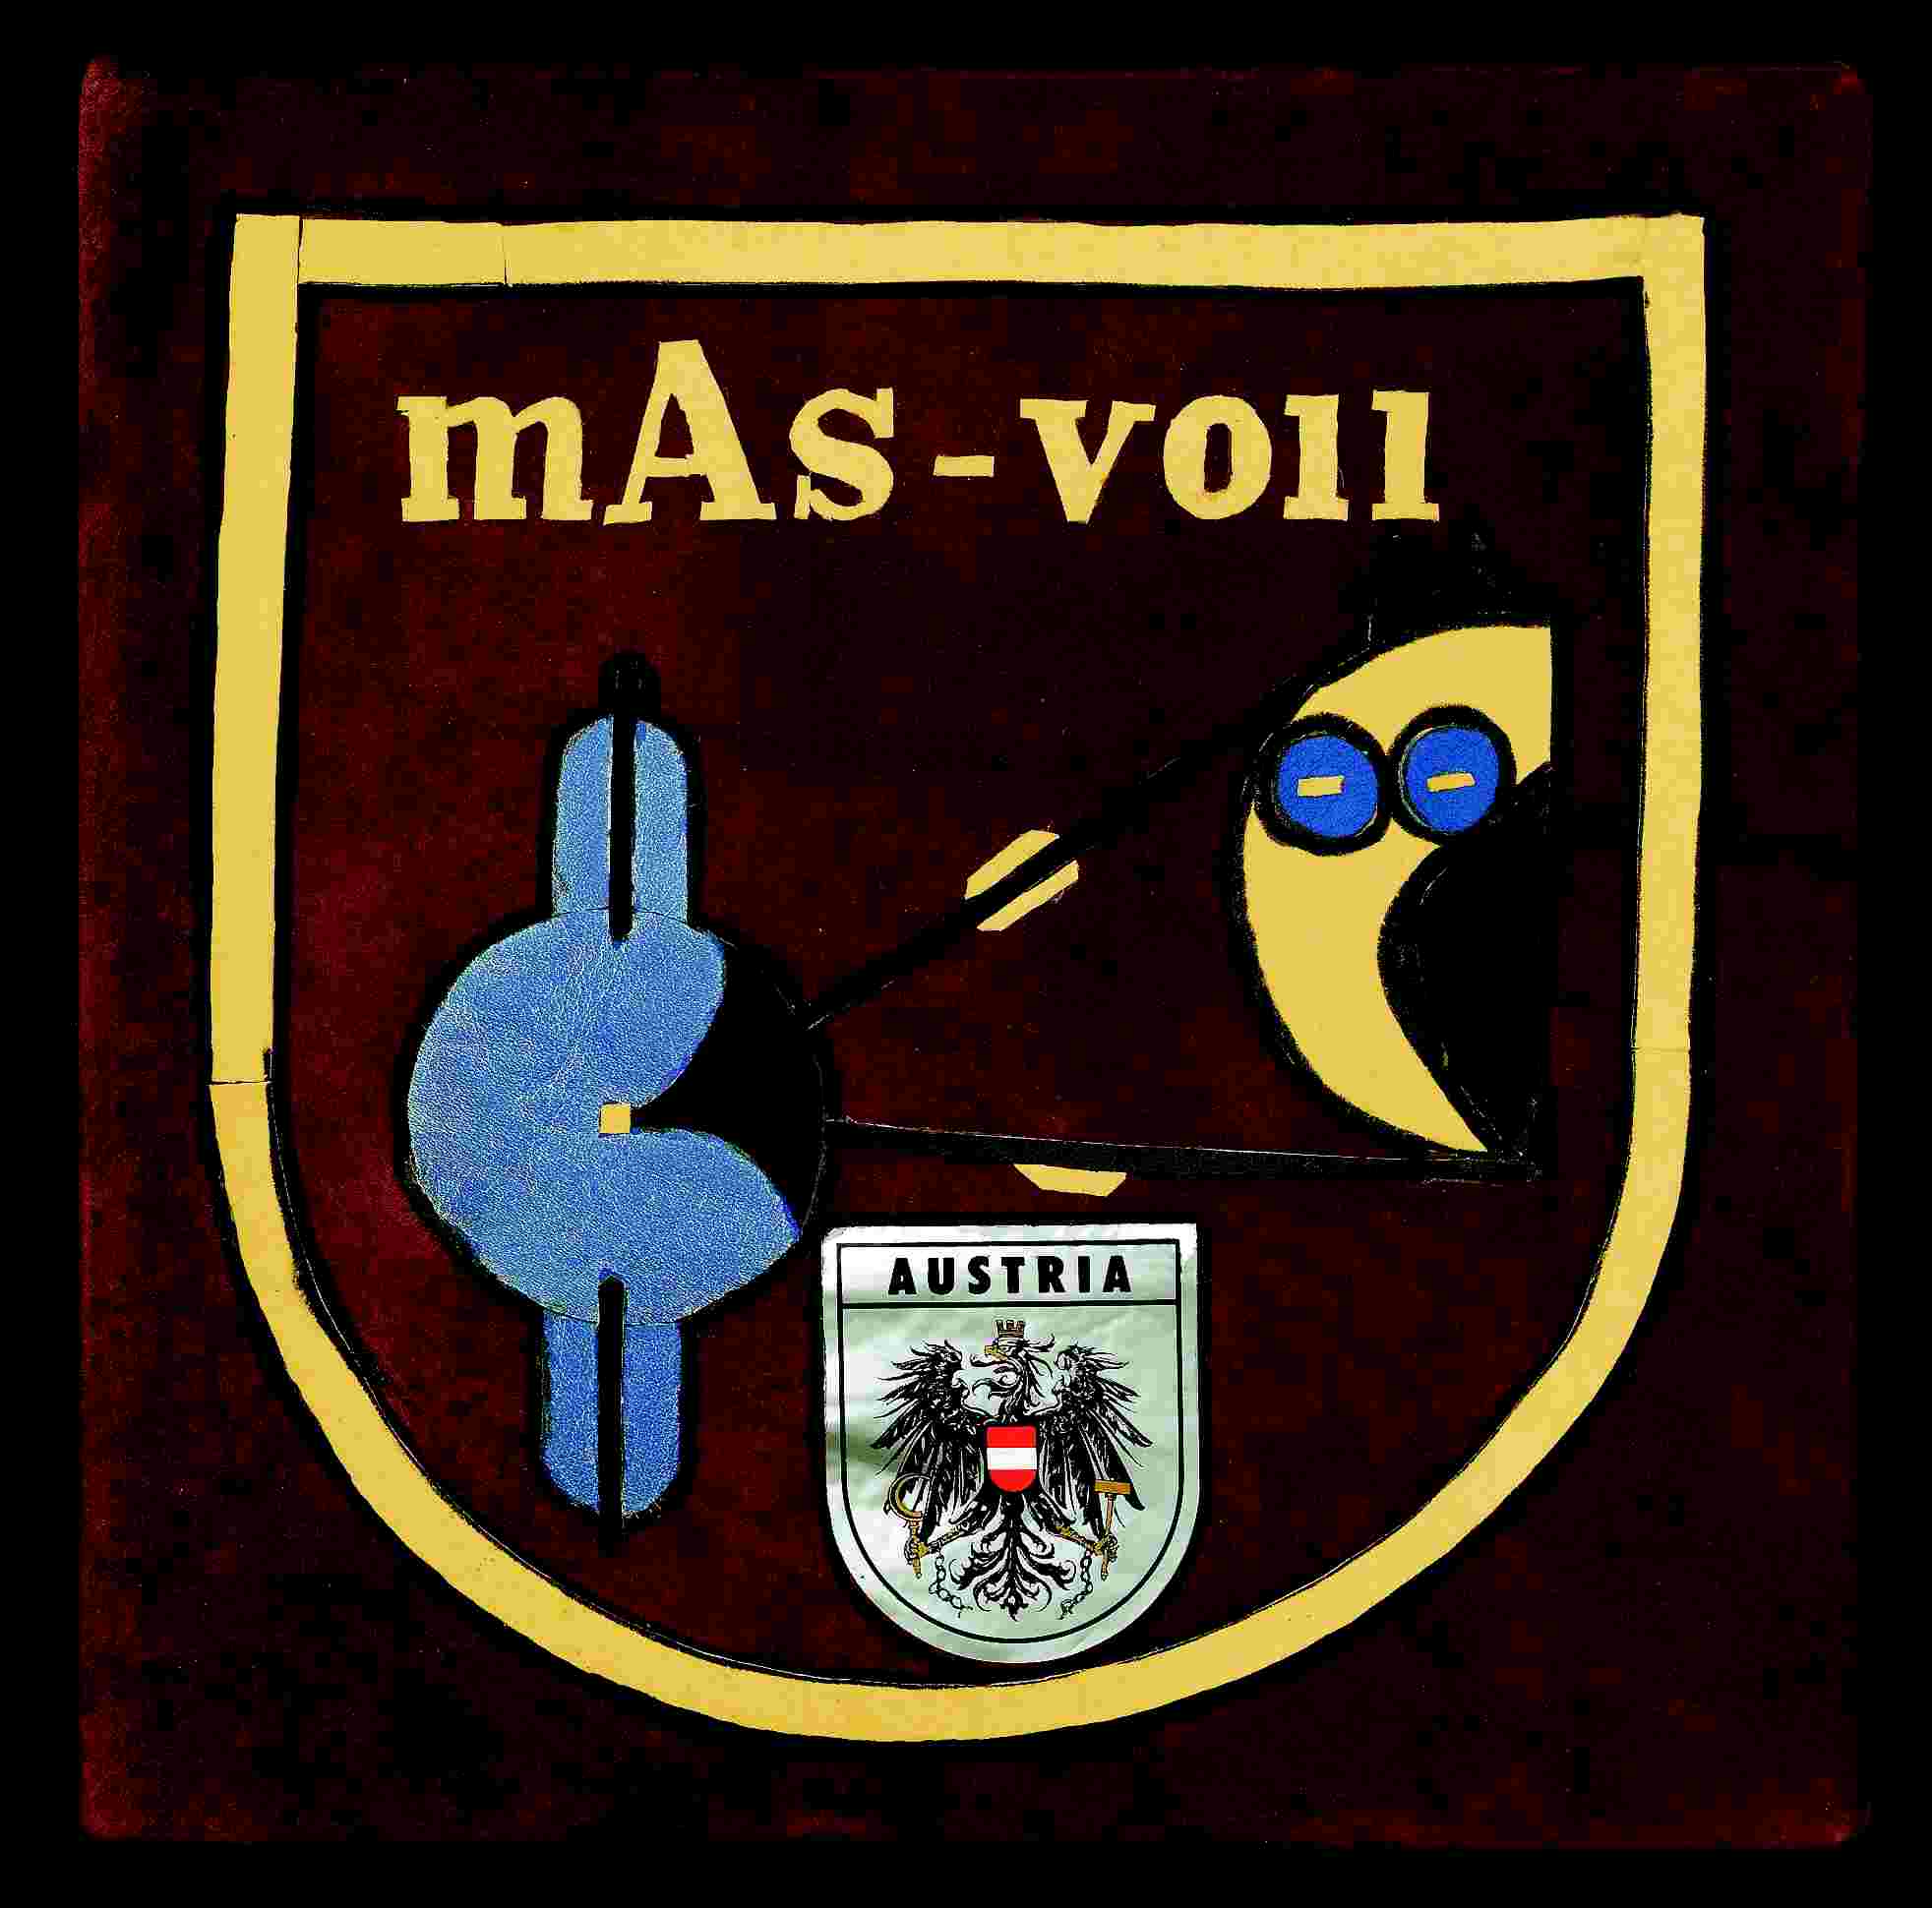 Wappen von Rt. mAs-voll